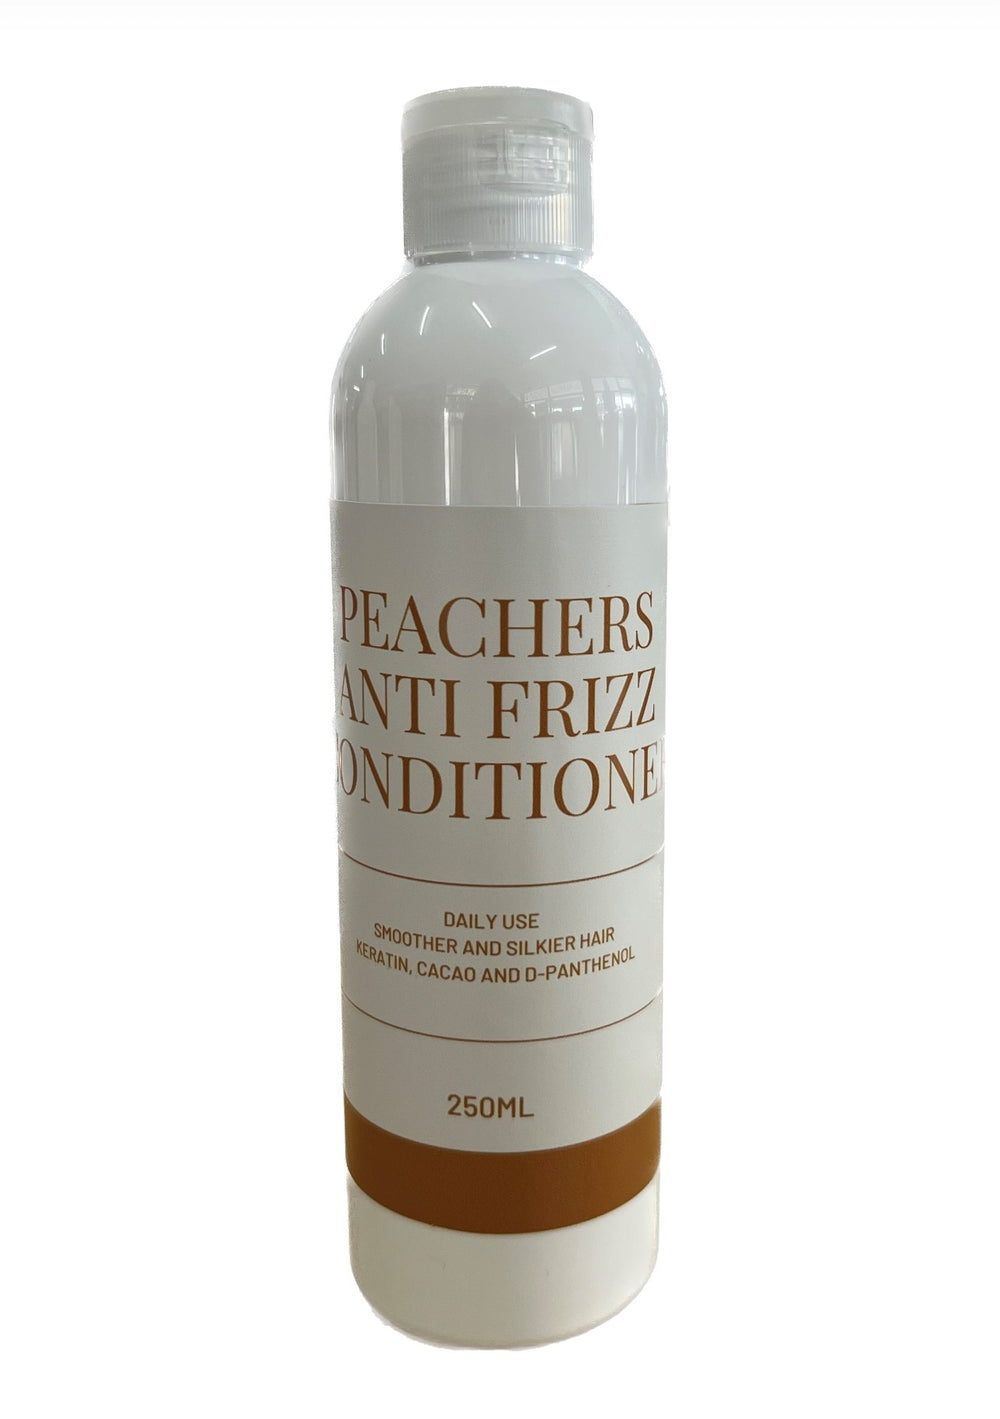 Peachers anti frizz conditioner 250ml